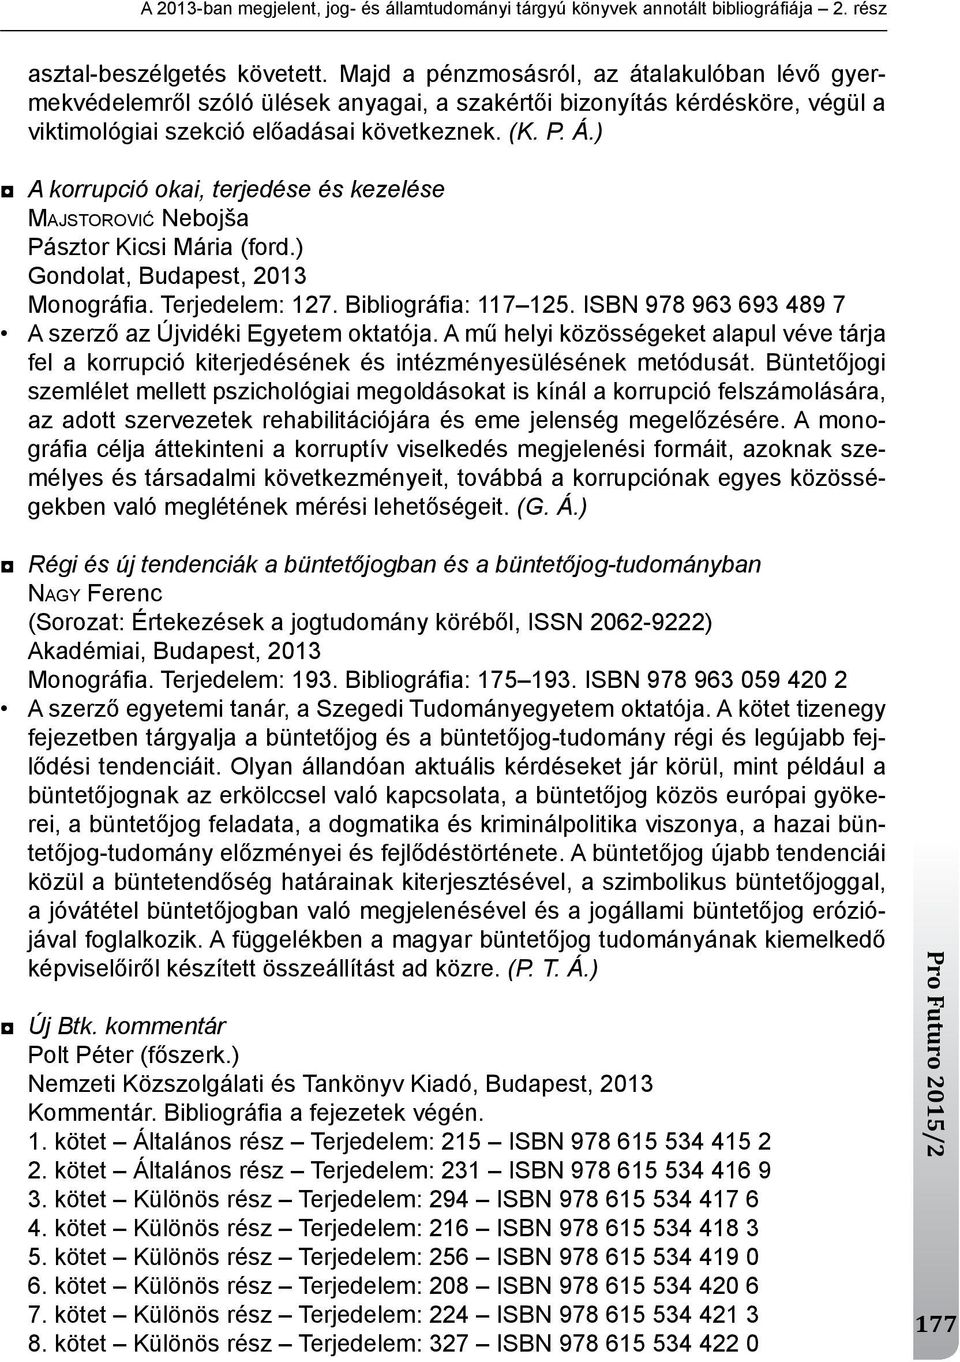 ) A korrupció okai, terjedése és kezelése MAJSTOROVIĆ nebojša Pásztor kicsi mária (ford.) gondolat, Budapest, 2013 monográfi a. terjedelem: 127. Bibliográfi a: 117 125.